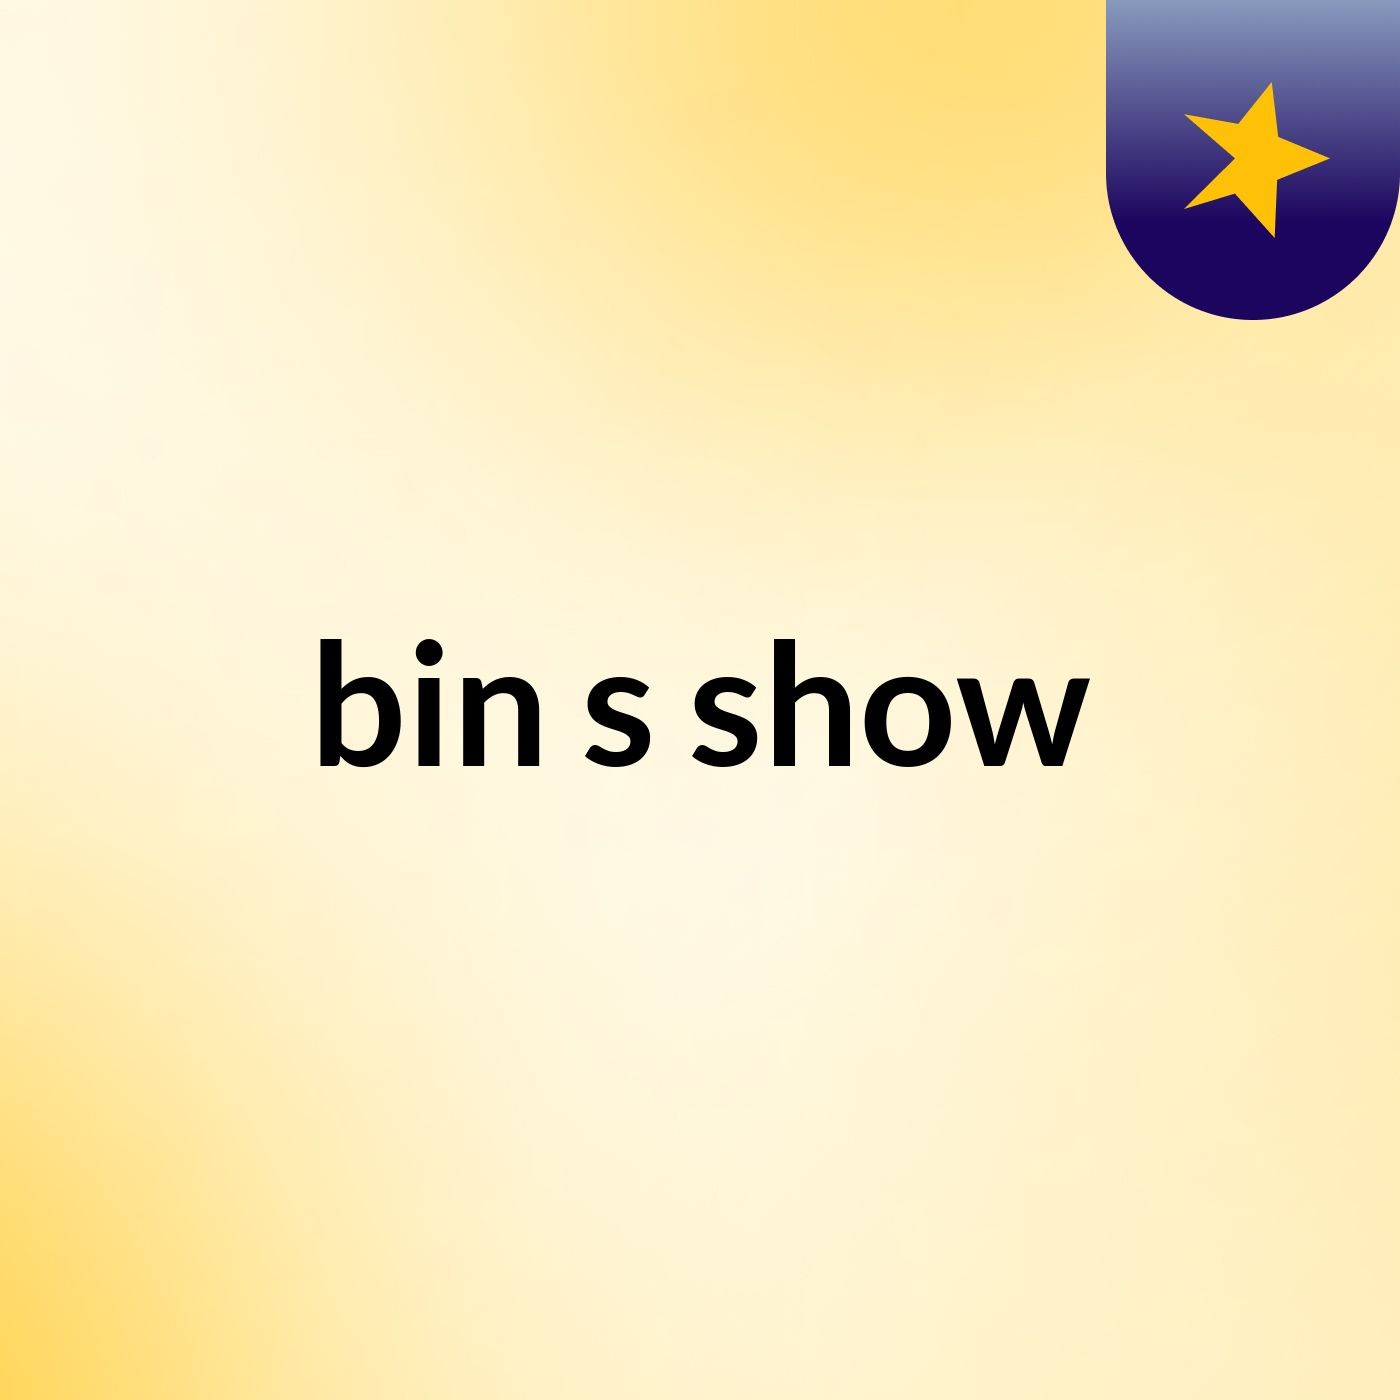 bin's show